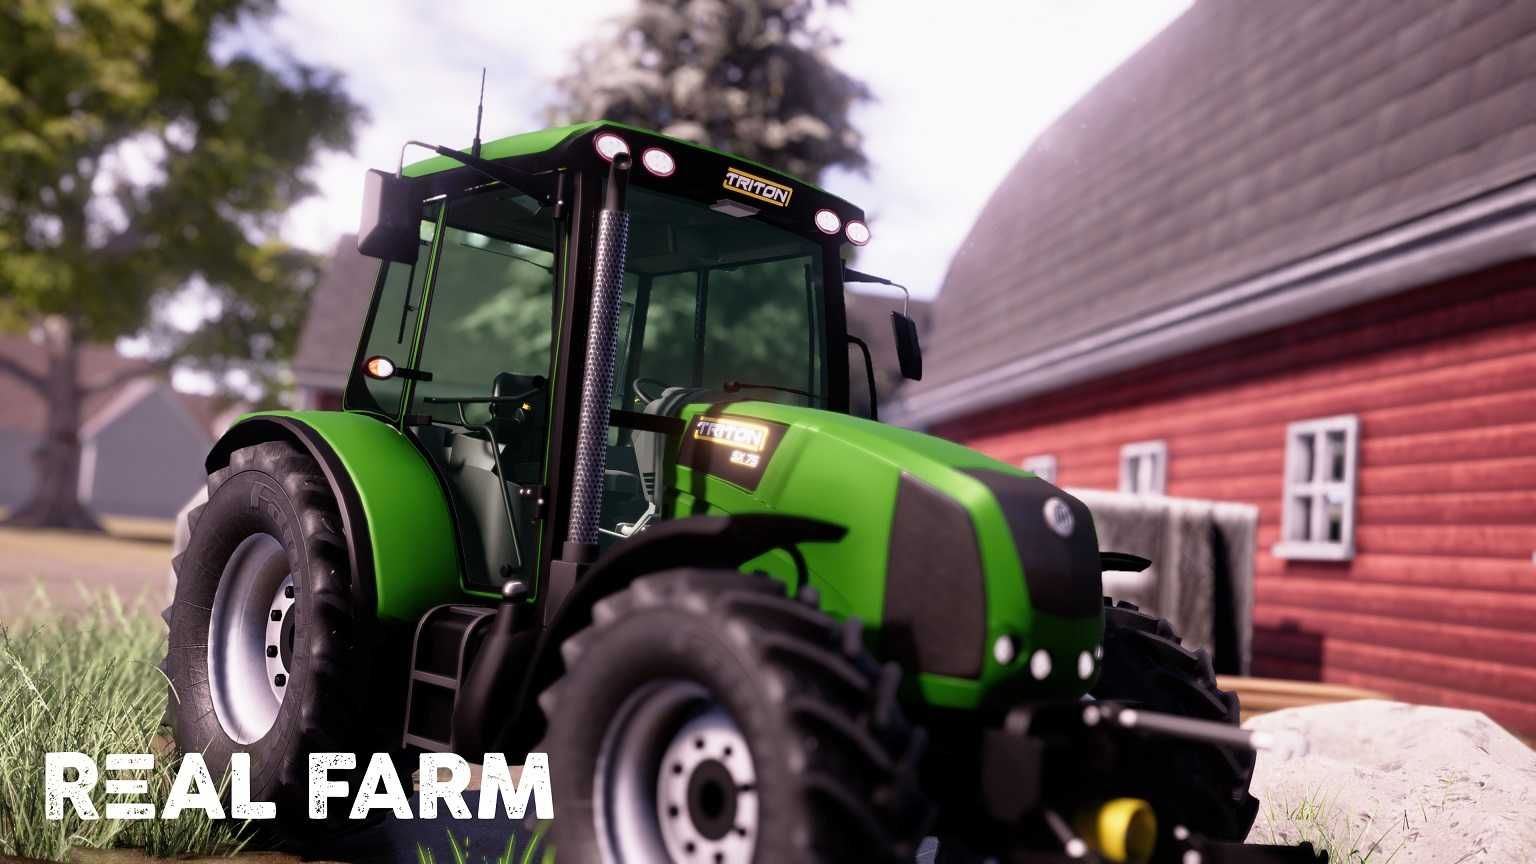 REAL FARM Symulator Farmy Farma